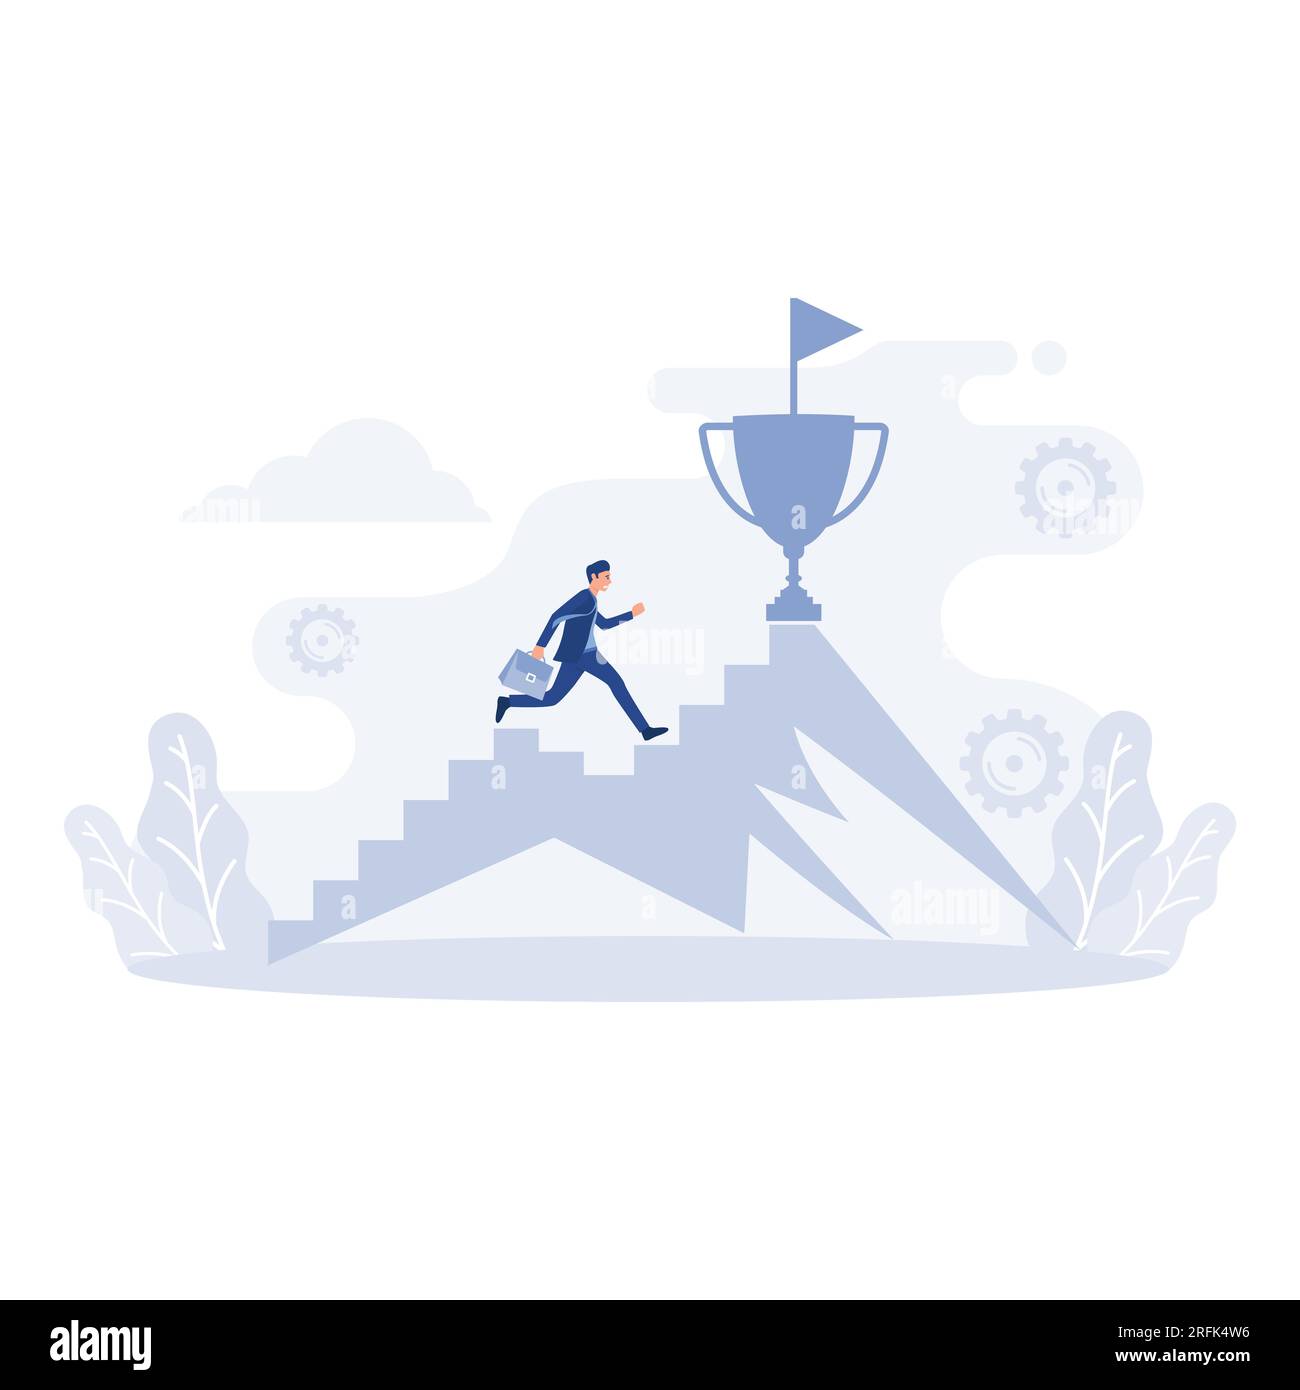 Geschäftsmann springt auf dem Diagramm zum Tor. Trophäen auf dem Berg, flache Vektorgrafik, moderne Illustration Stock Vektor